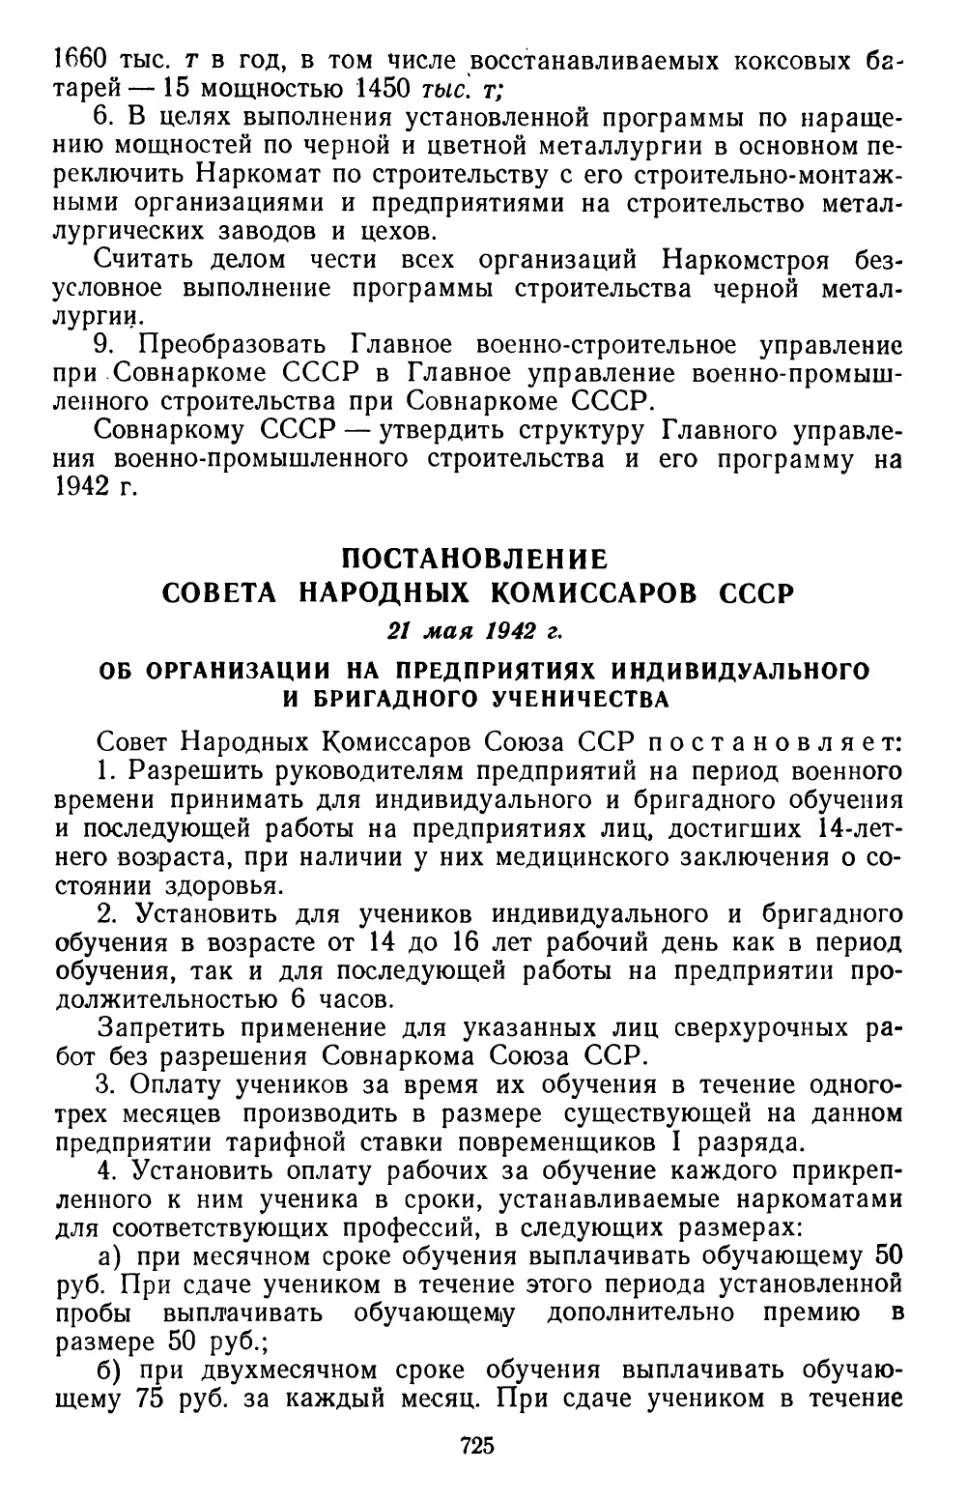 Постановление Совета Народных Комиссаров СССР, 21 мая 1942 г. Об организации на предприятиях индивидуального и бригадного ученичества